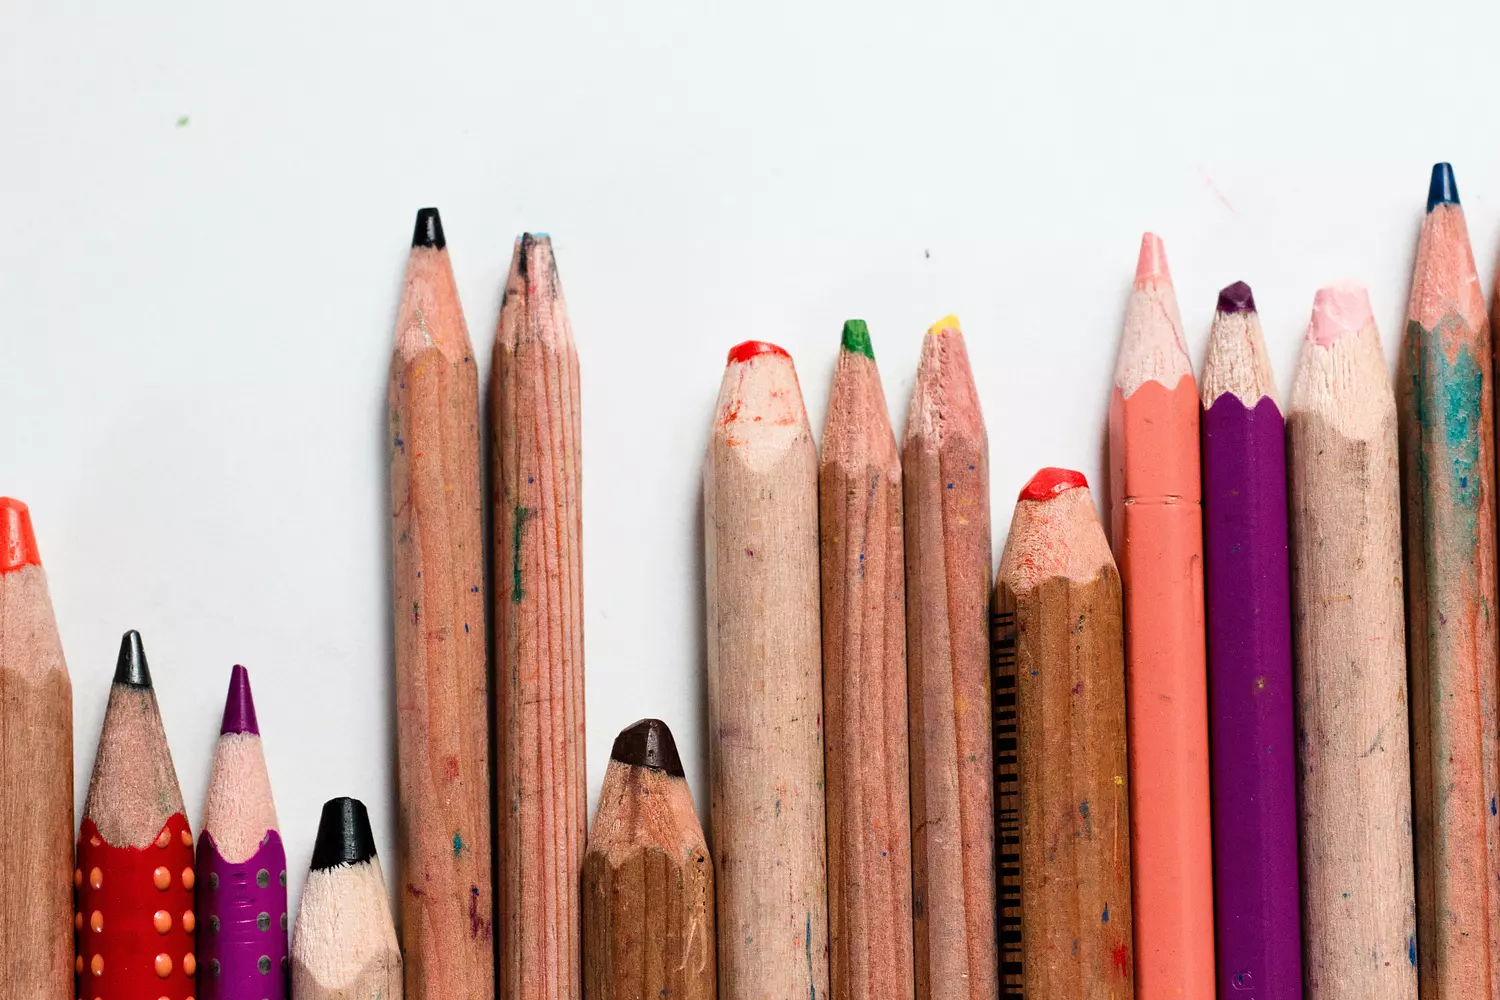 interview werken naast pensioen dieuwertje - diverse potloden met kleurtjes op een rij